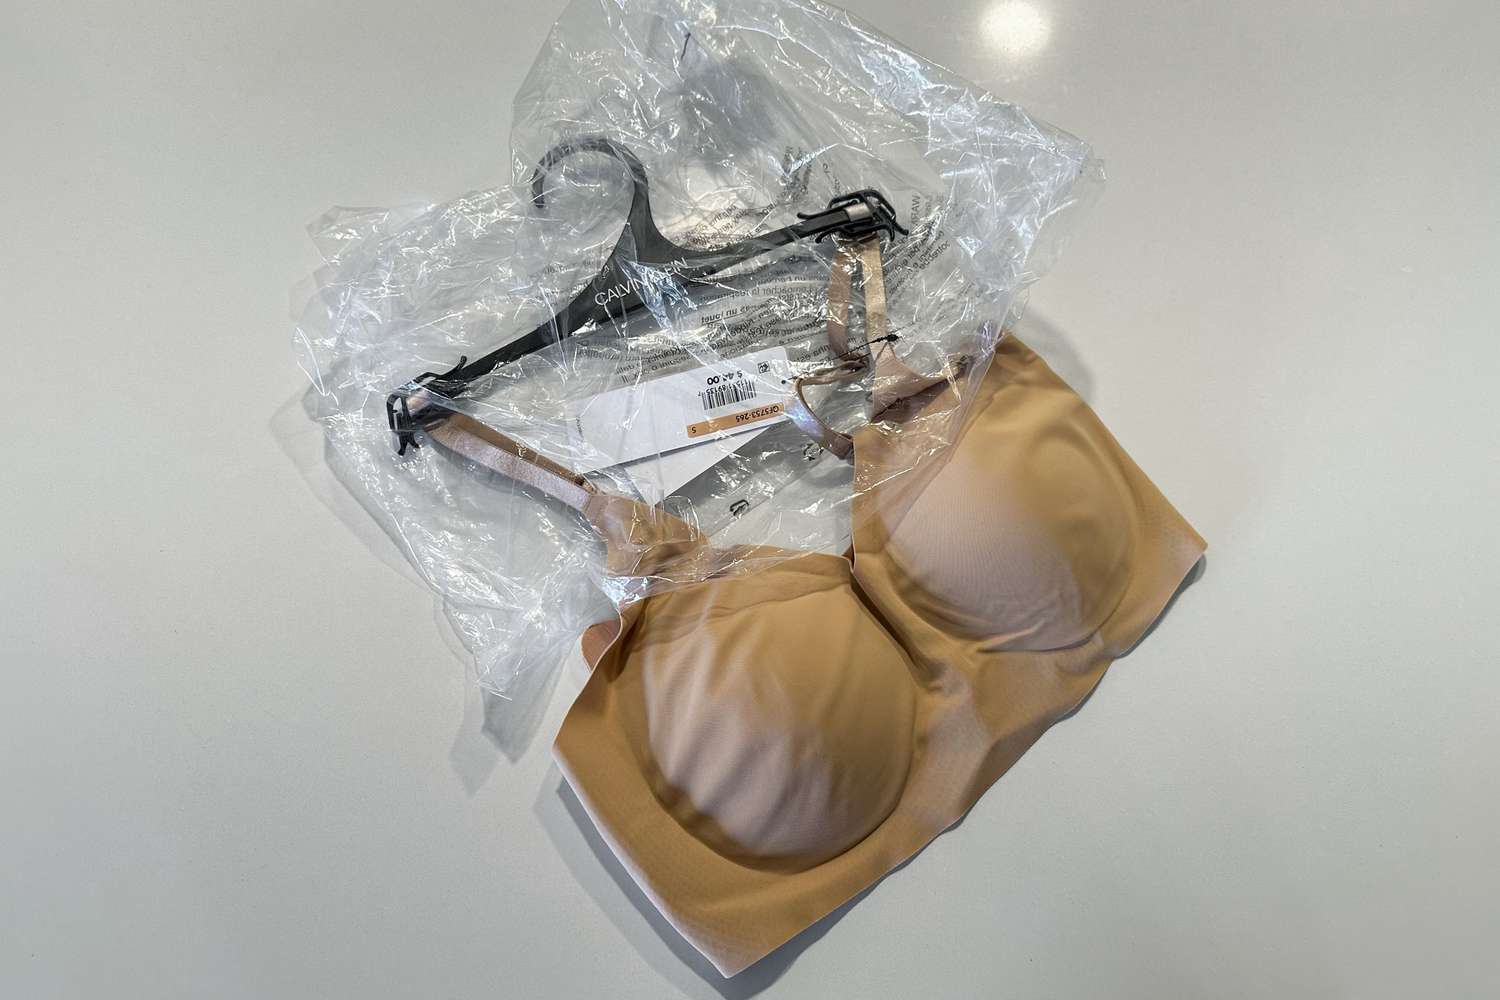 Um bralette invisível da Calvin Klein está sobre o balcão e é retirado da embalagem plástica.